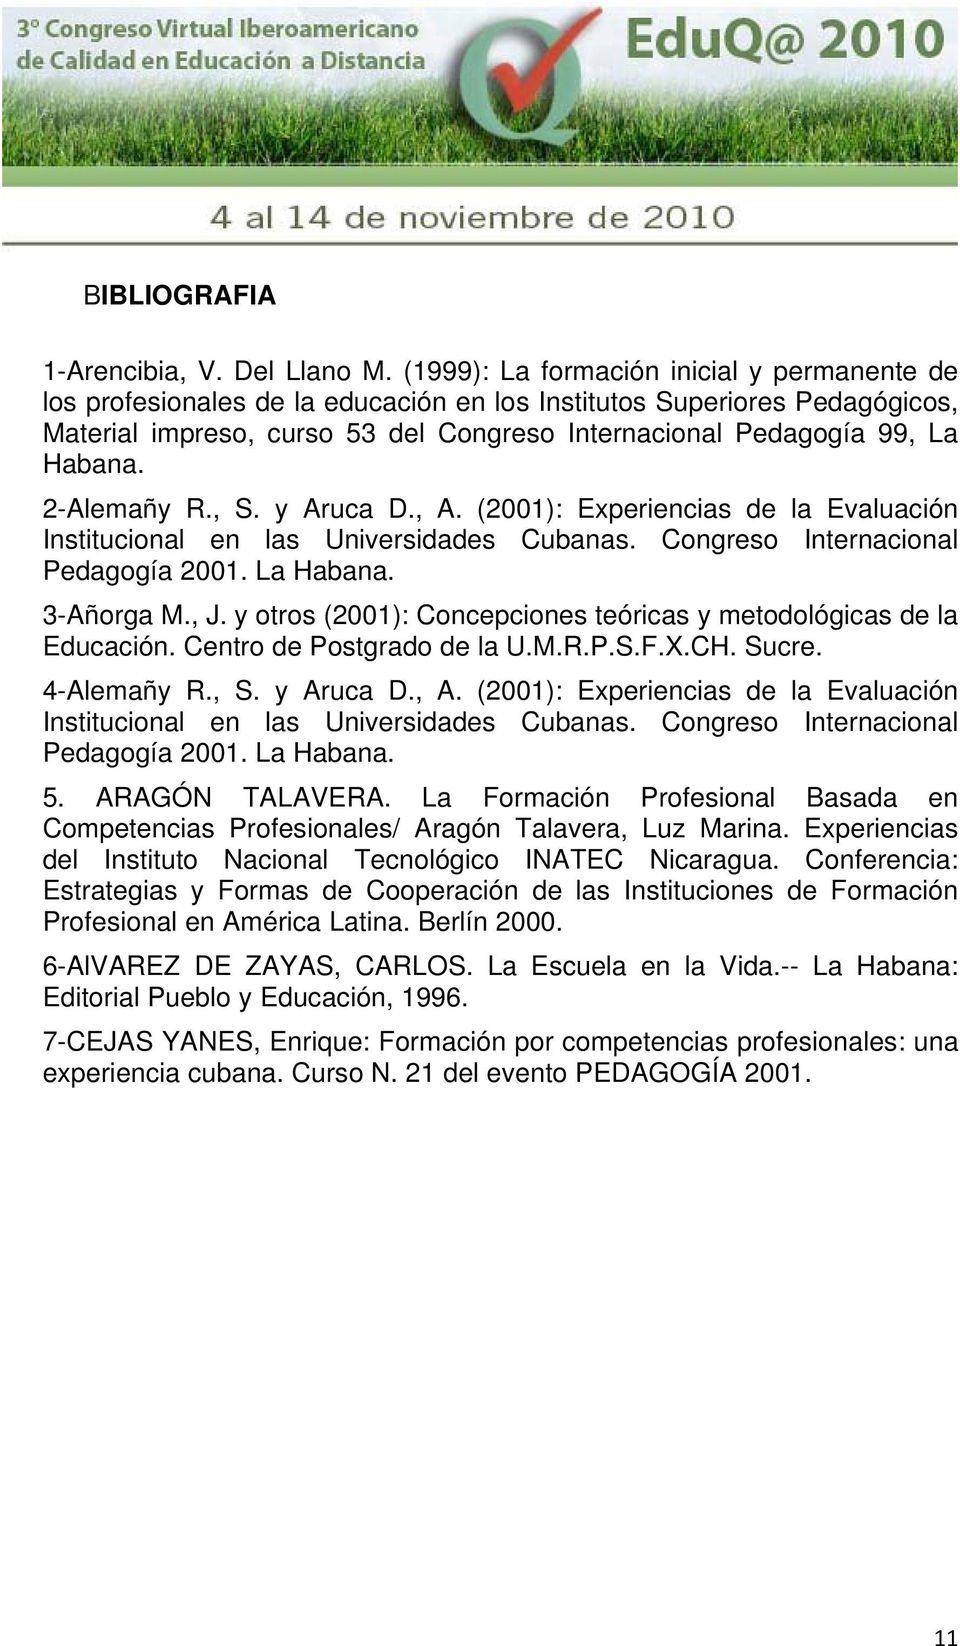 2-Alemañy R., S. y Aruca D., A. (2001): Experiencias de la Evaluación Institucional en las Universidades Cubanas. Congreso Internacional Pedagogía 2001. La Habana. 3-Añorga M., J.